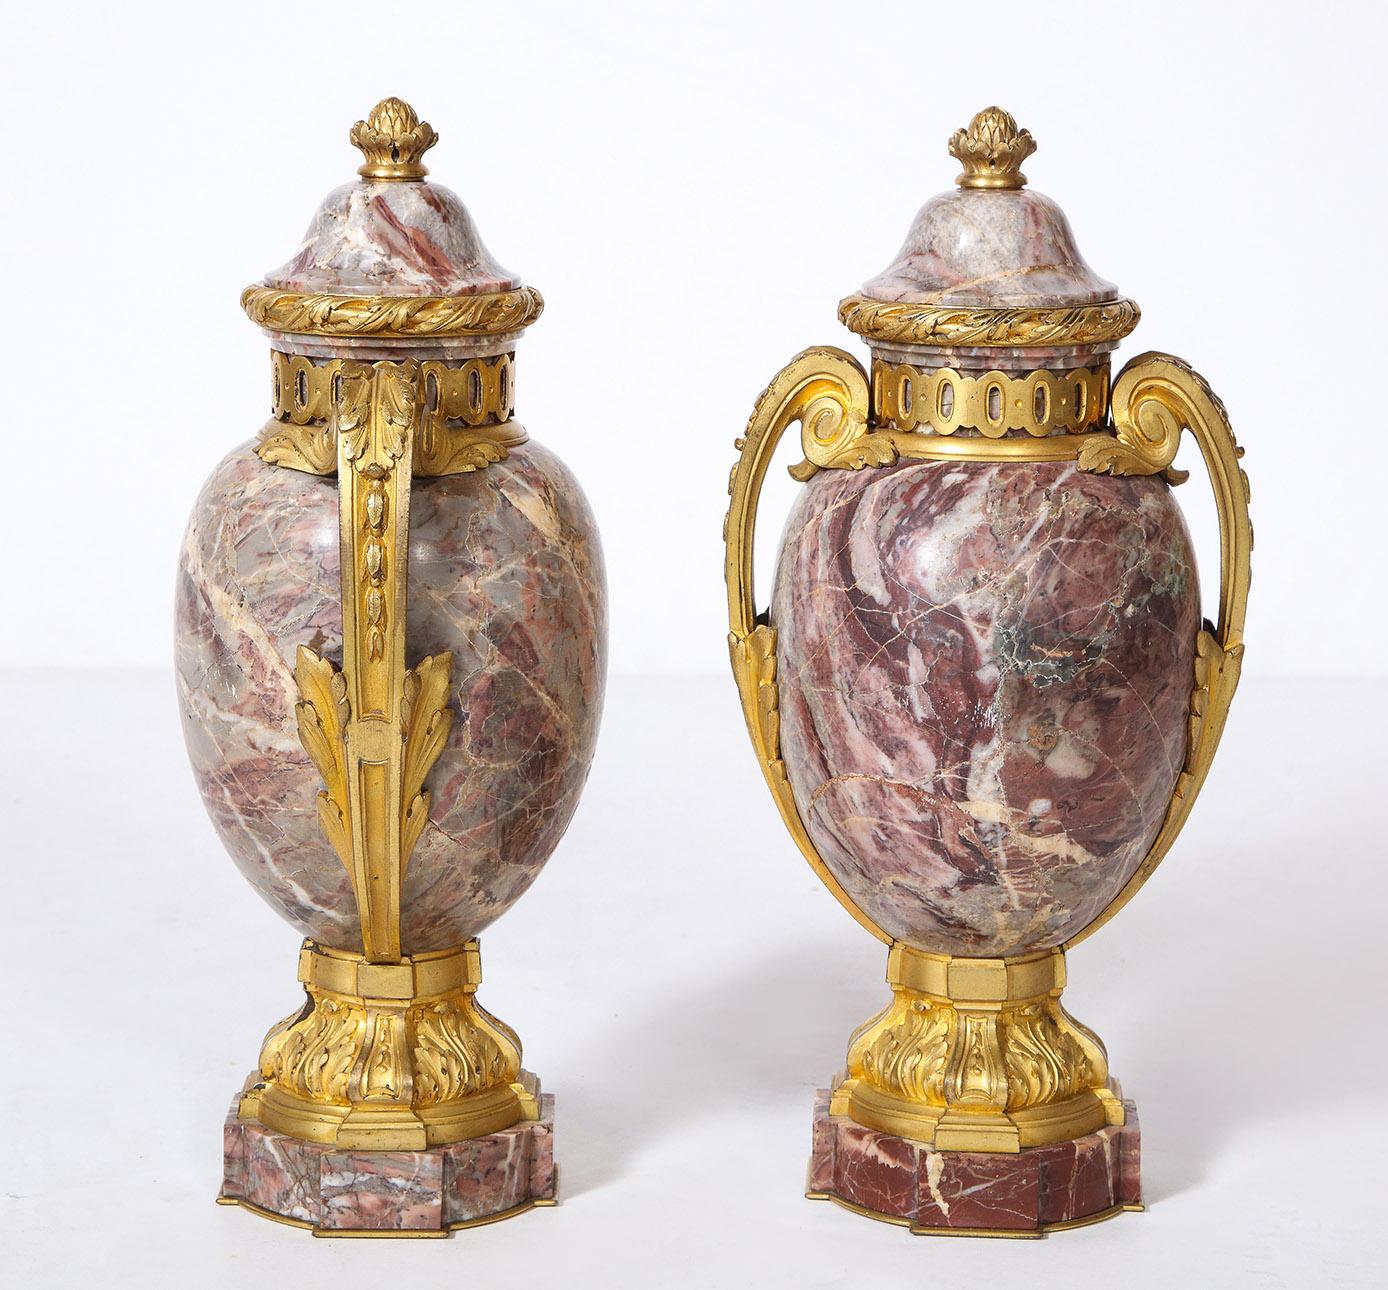 Paire d'urnes en marbre de style Louis XVI français montées sur bronze

Les urnes en marbre Rosso Levanto avec des montures en bronze de style Louis XVI bien ciselées.